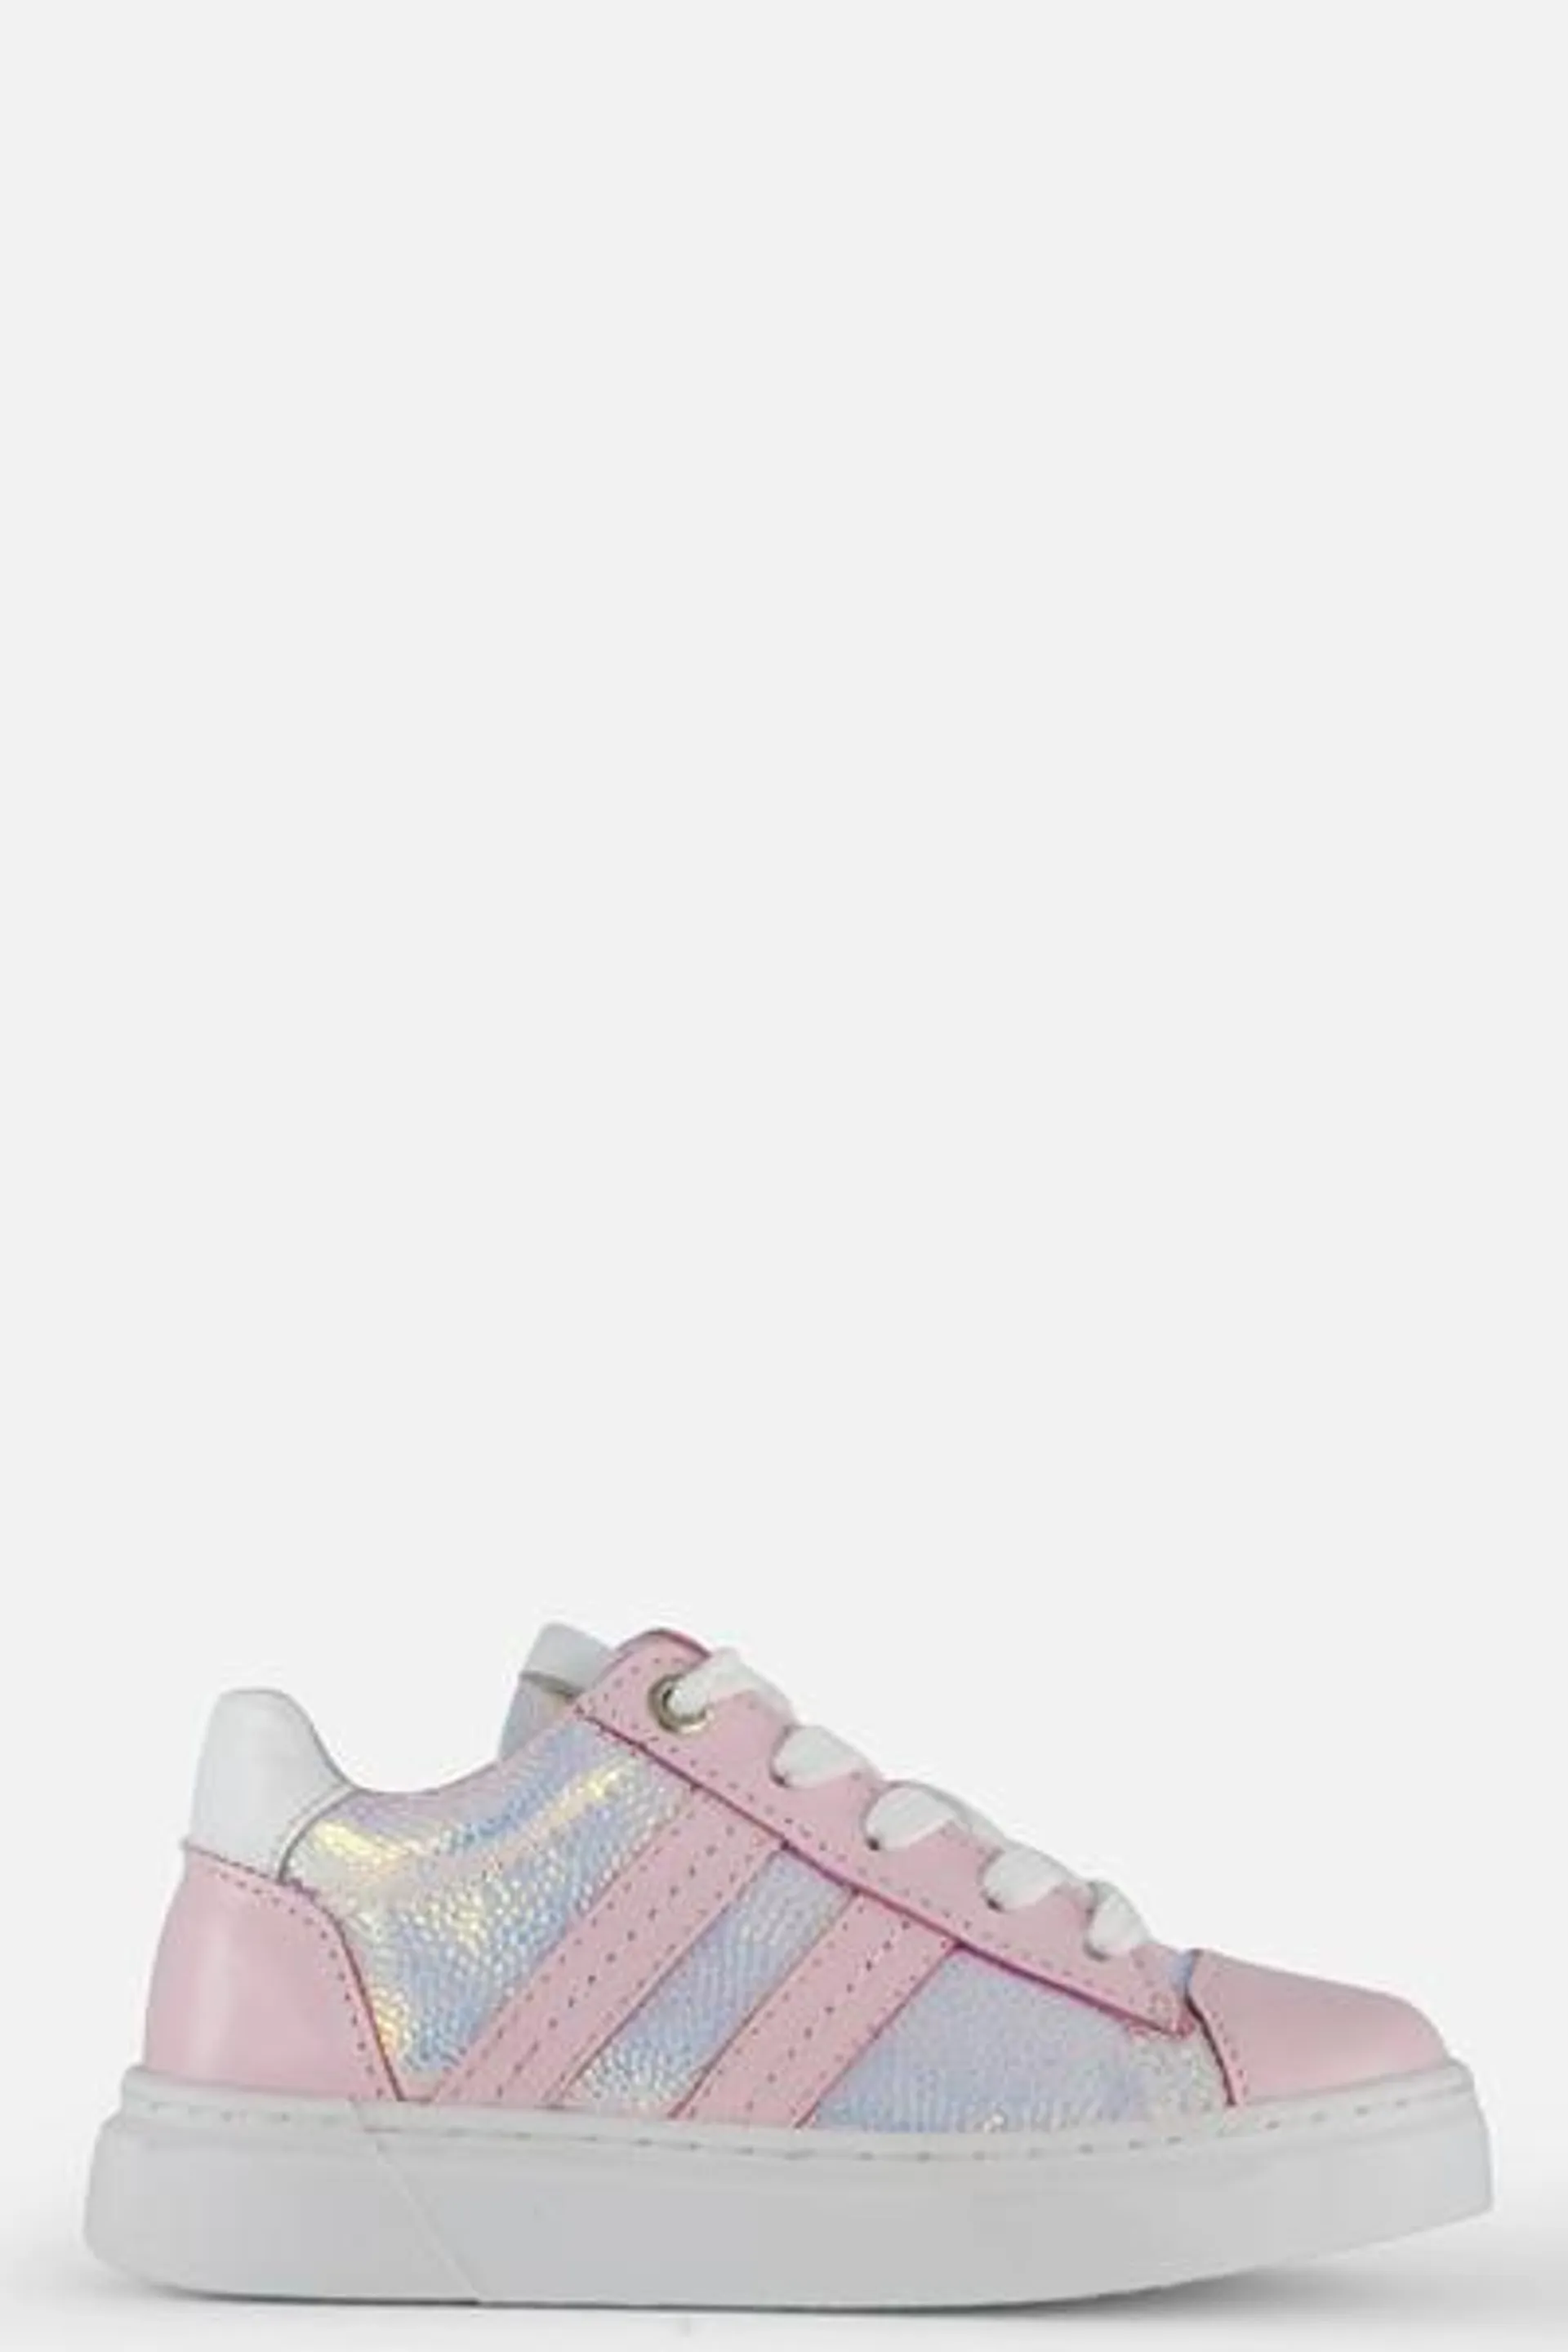 Muyters Petrolio Sneakers roze Leer